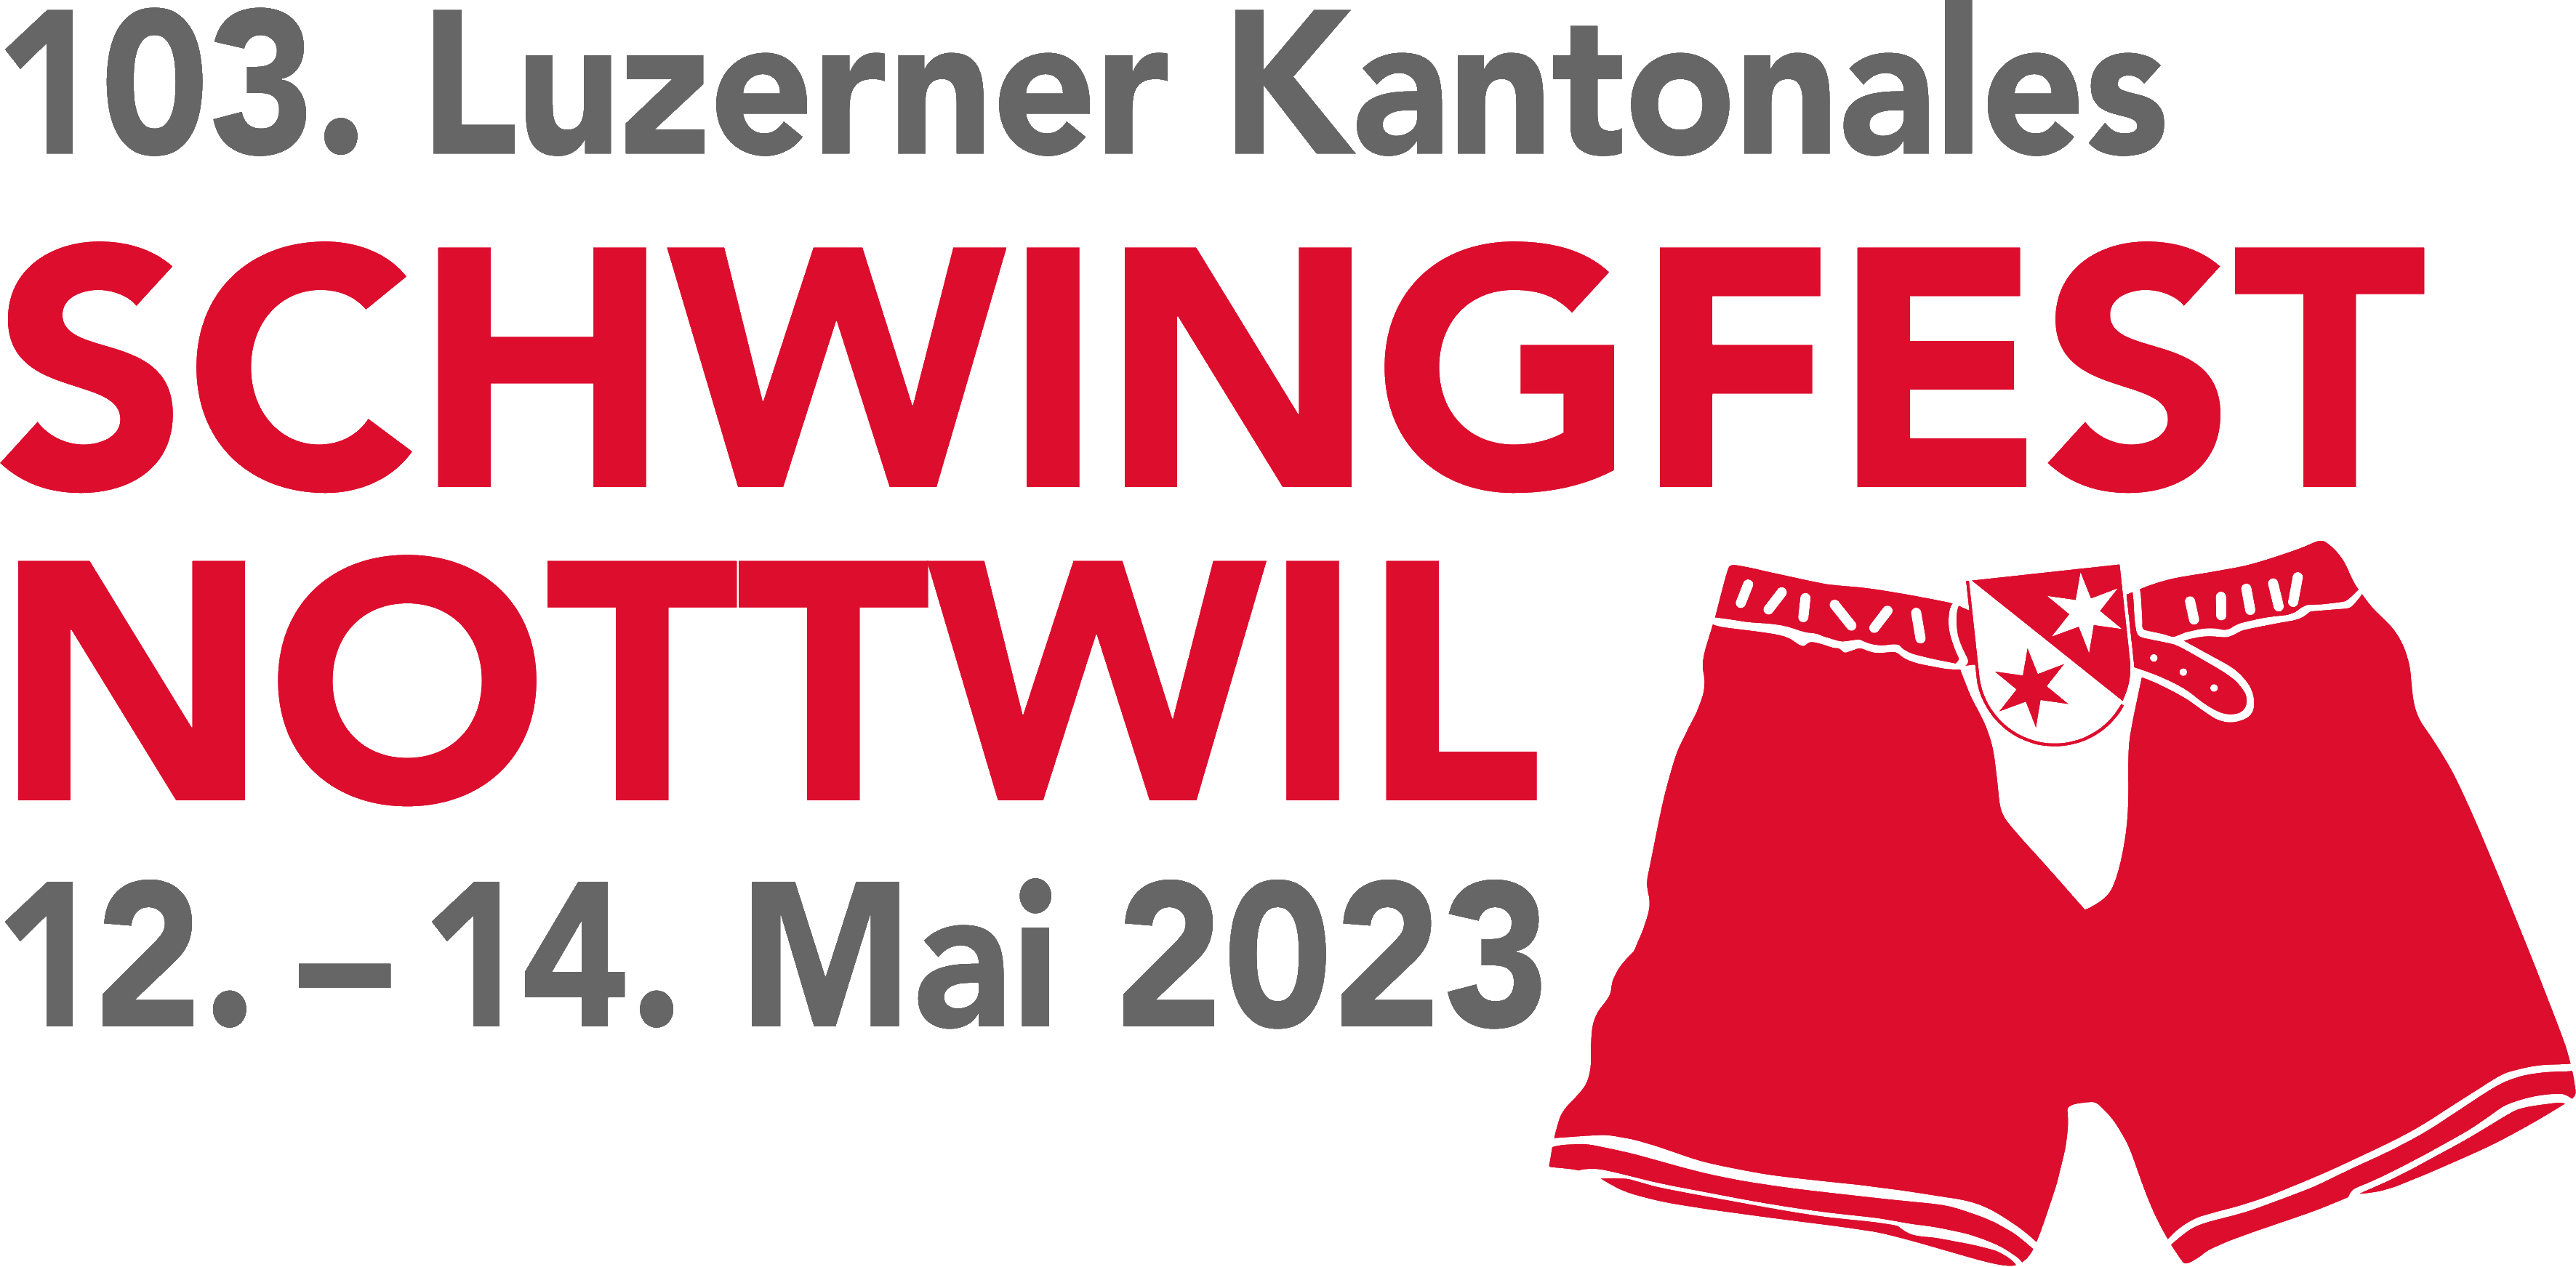 Luzerner Kantonales Schwingfest Nottwil 2023